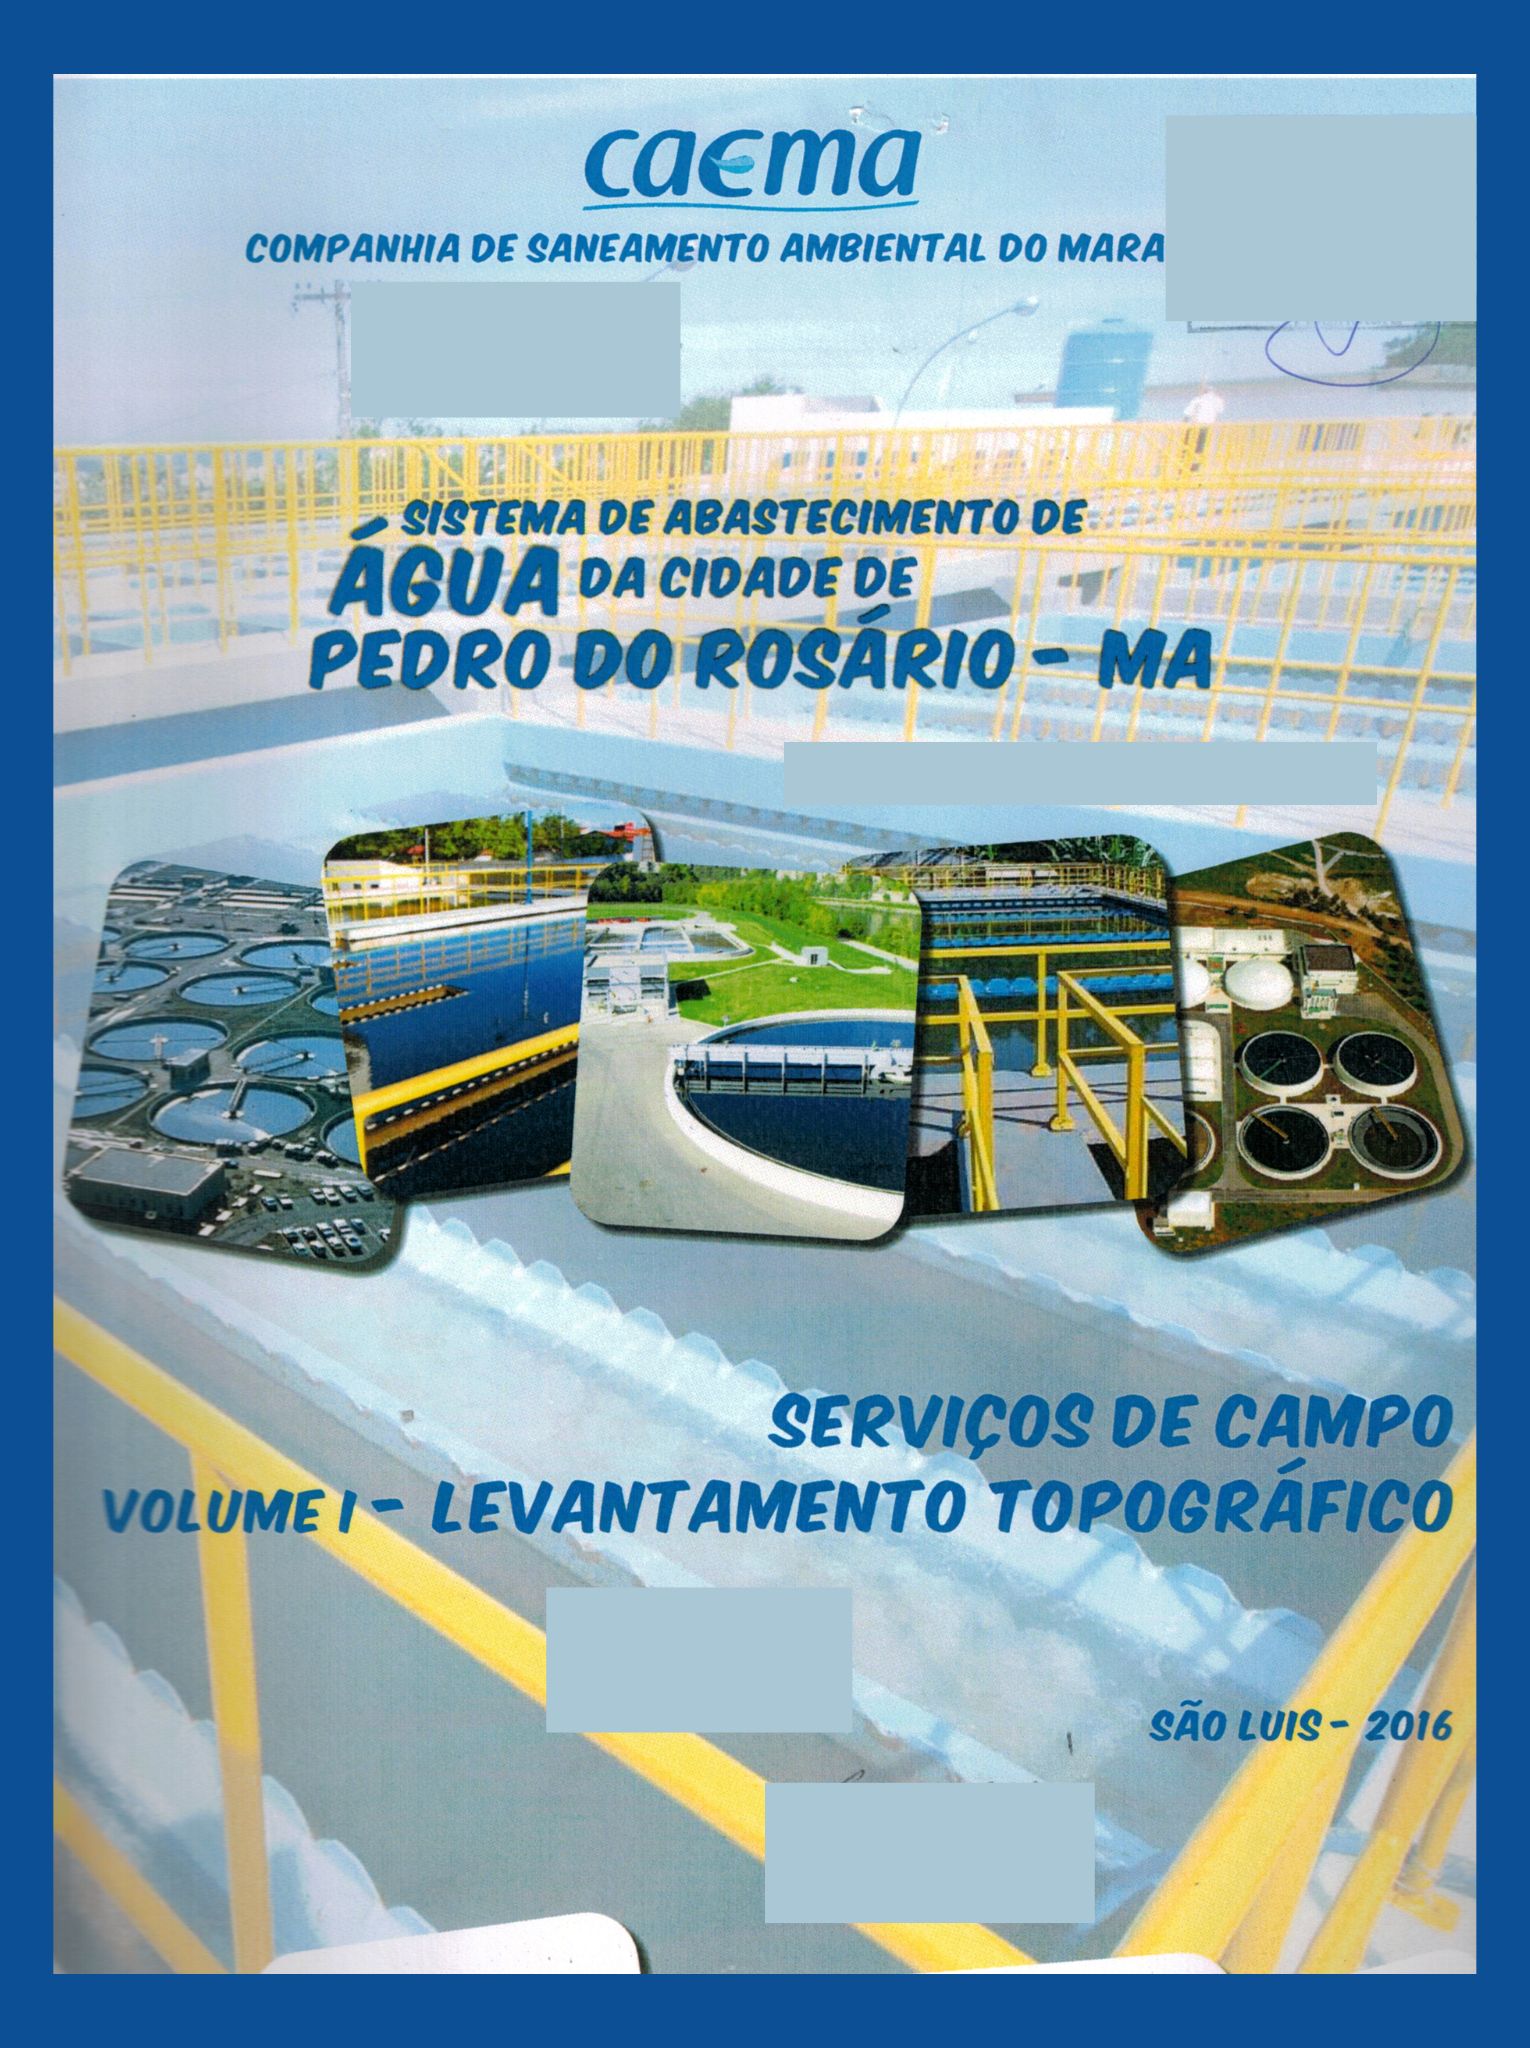 Imagem da capa do Projeto Técnico com informações sobre título e autoria.